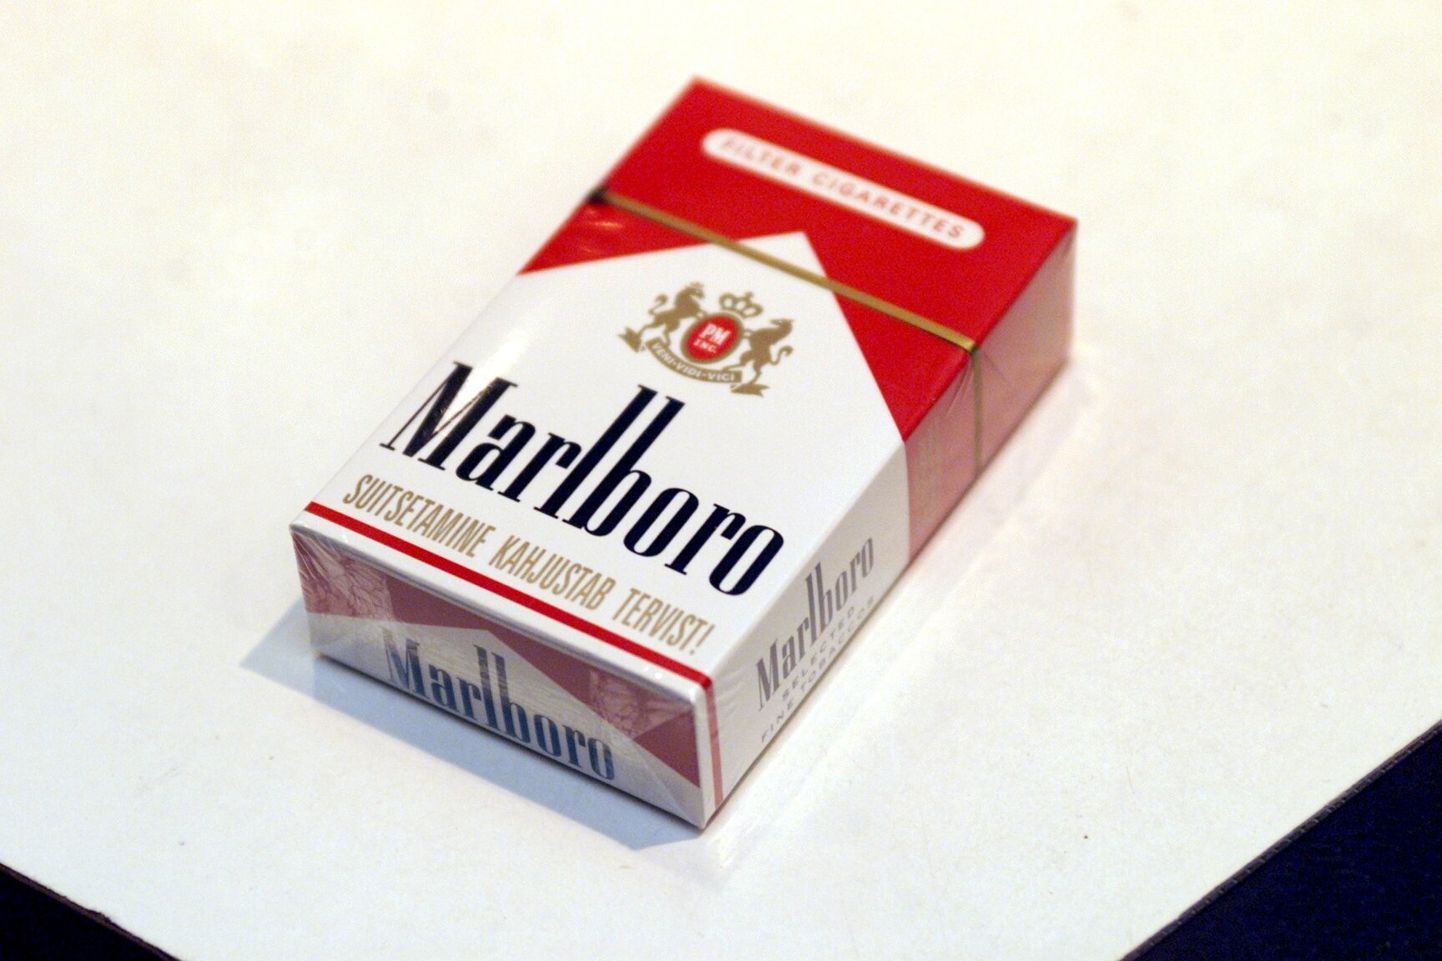 TLNPM01: SUITSUPAKK: TALLINN, EESTI,13 FEB01-
Sigaret Marlboro. Valitsus kavandab juuli algusest t